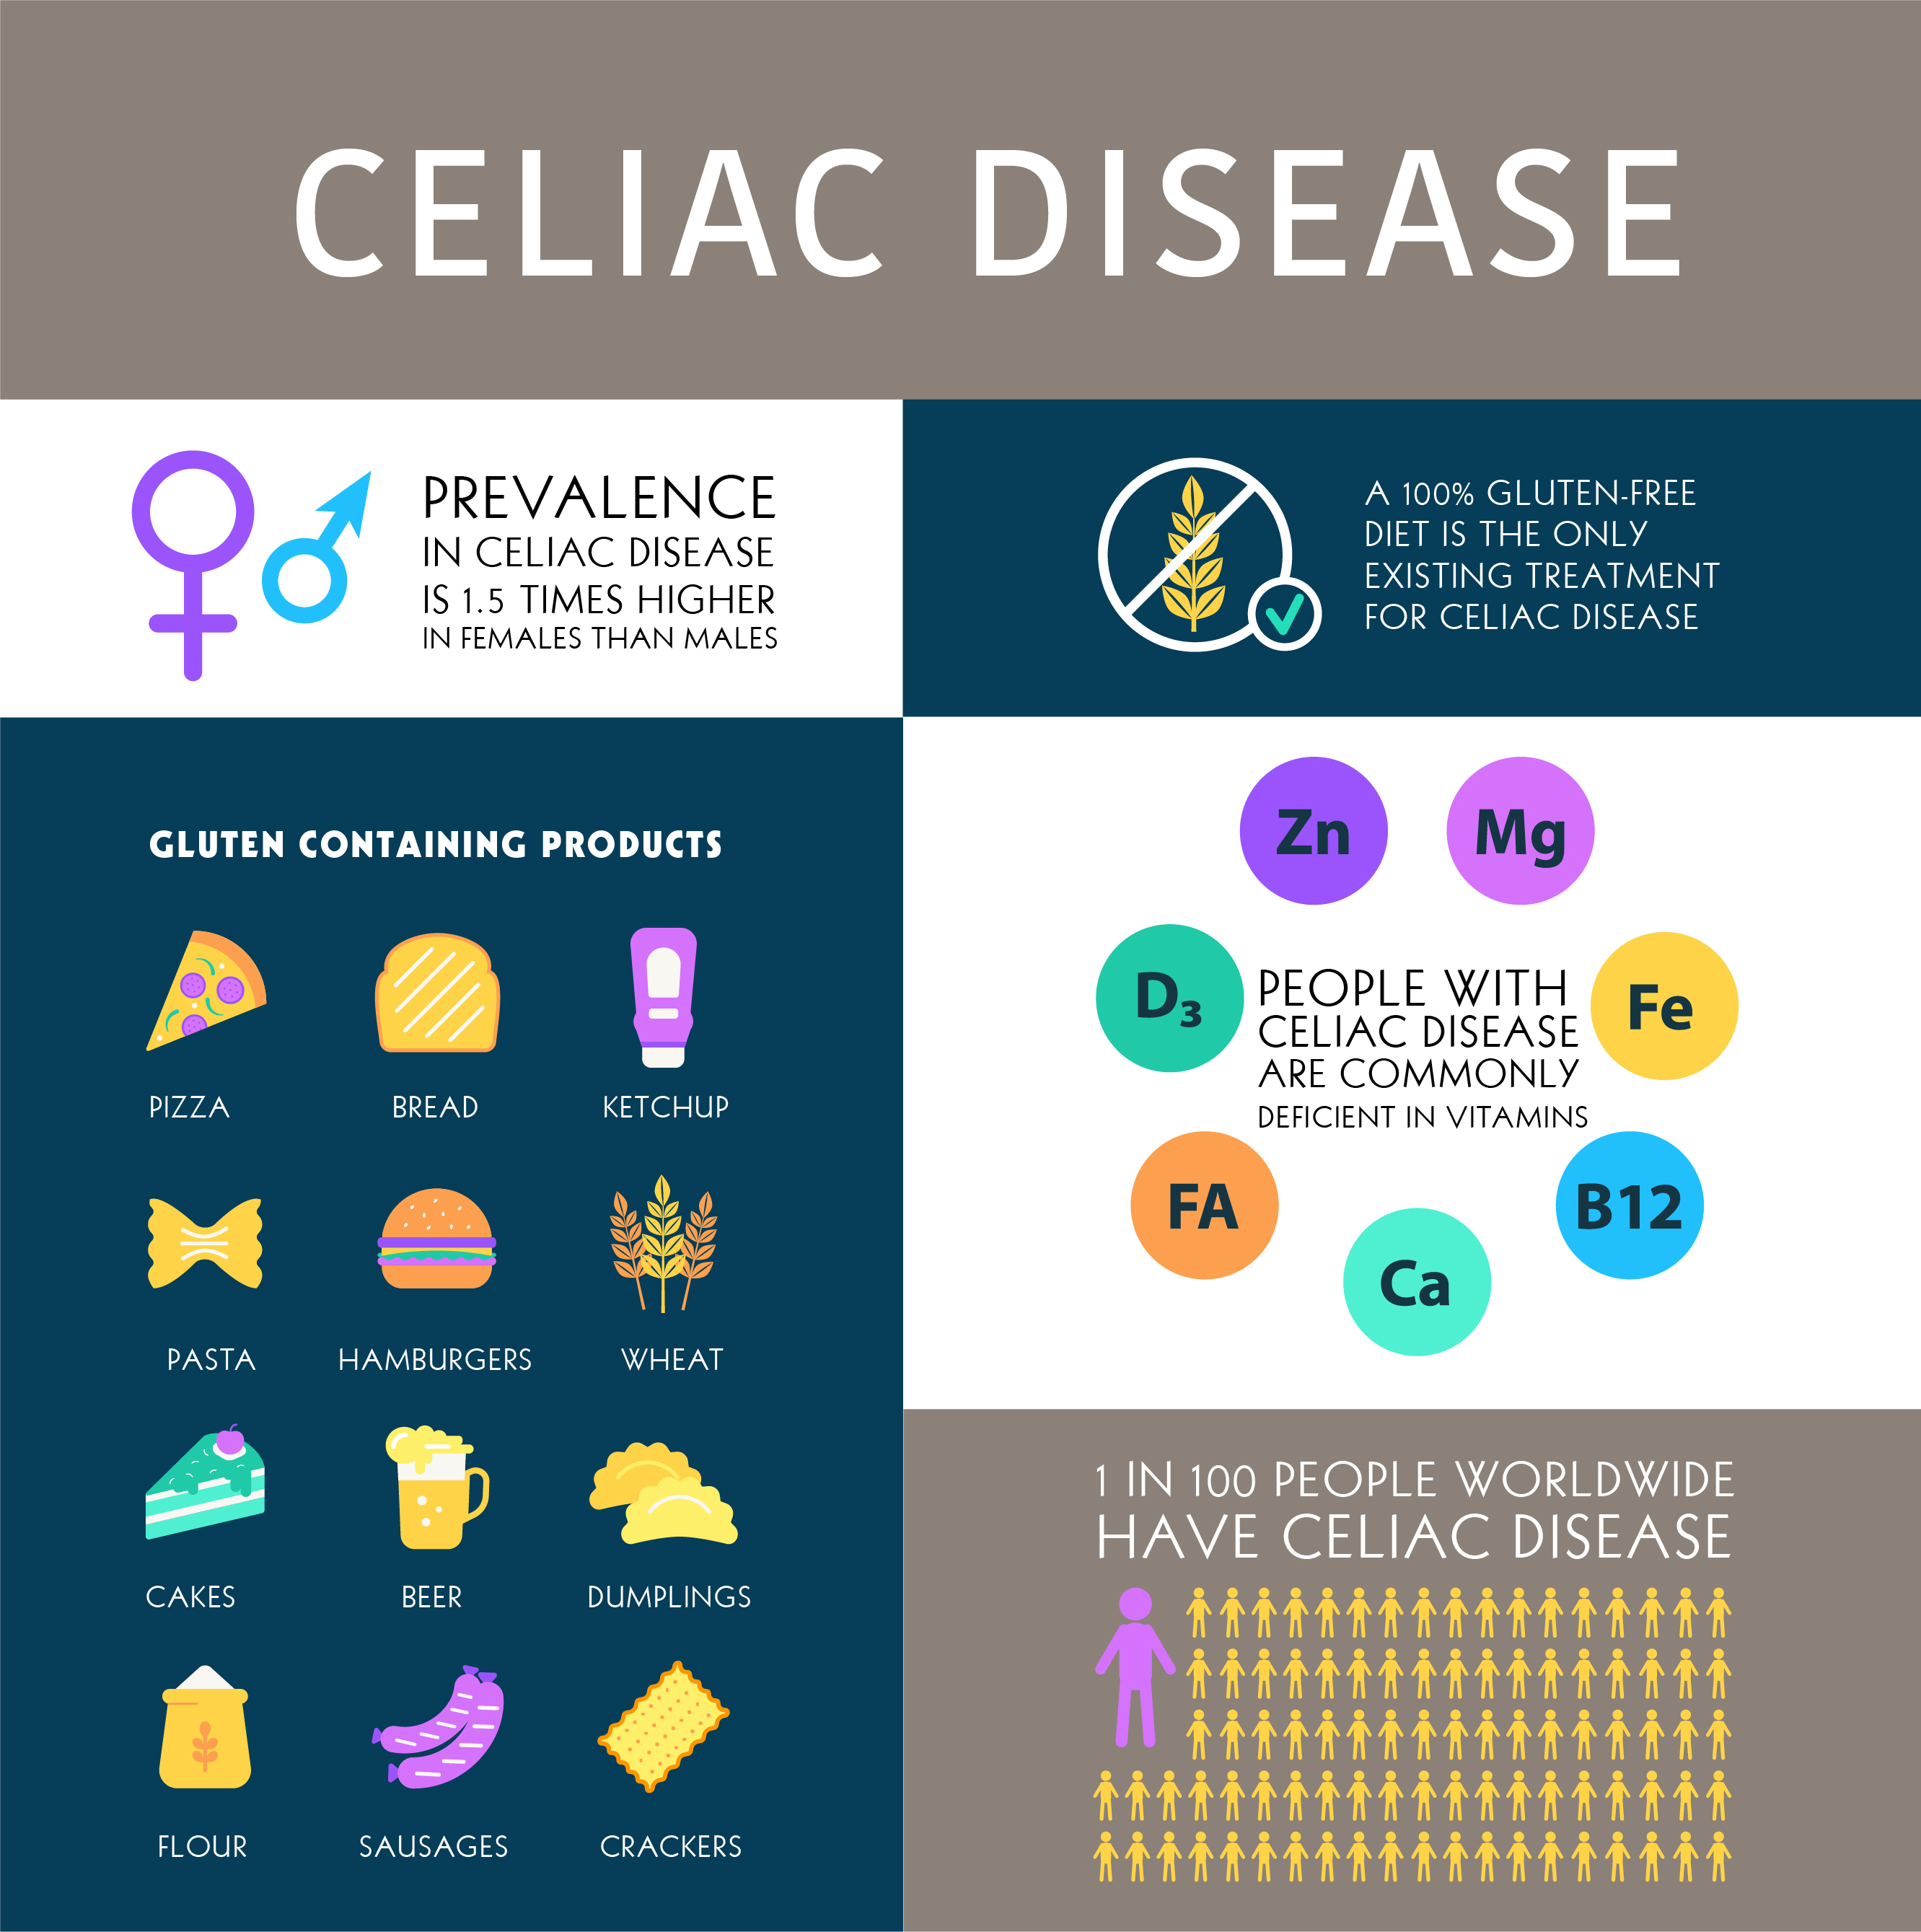 Celiac disease and gluten free diet - Health